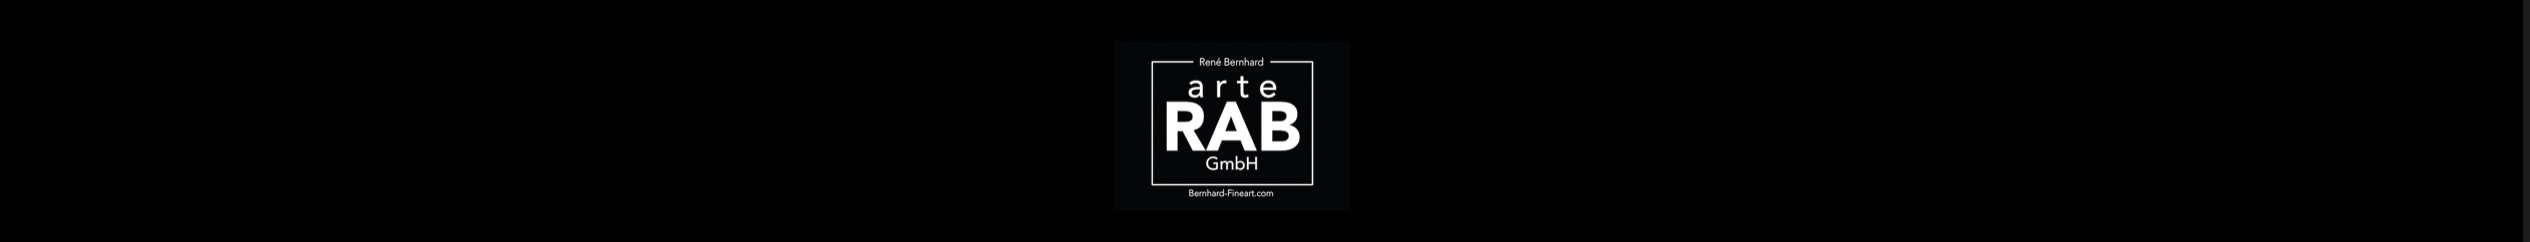 Rene Bernhard Fineart Galerie und Kunsthandel